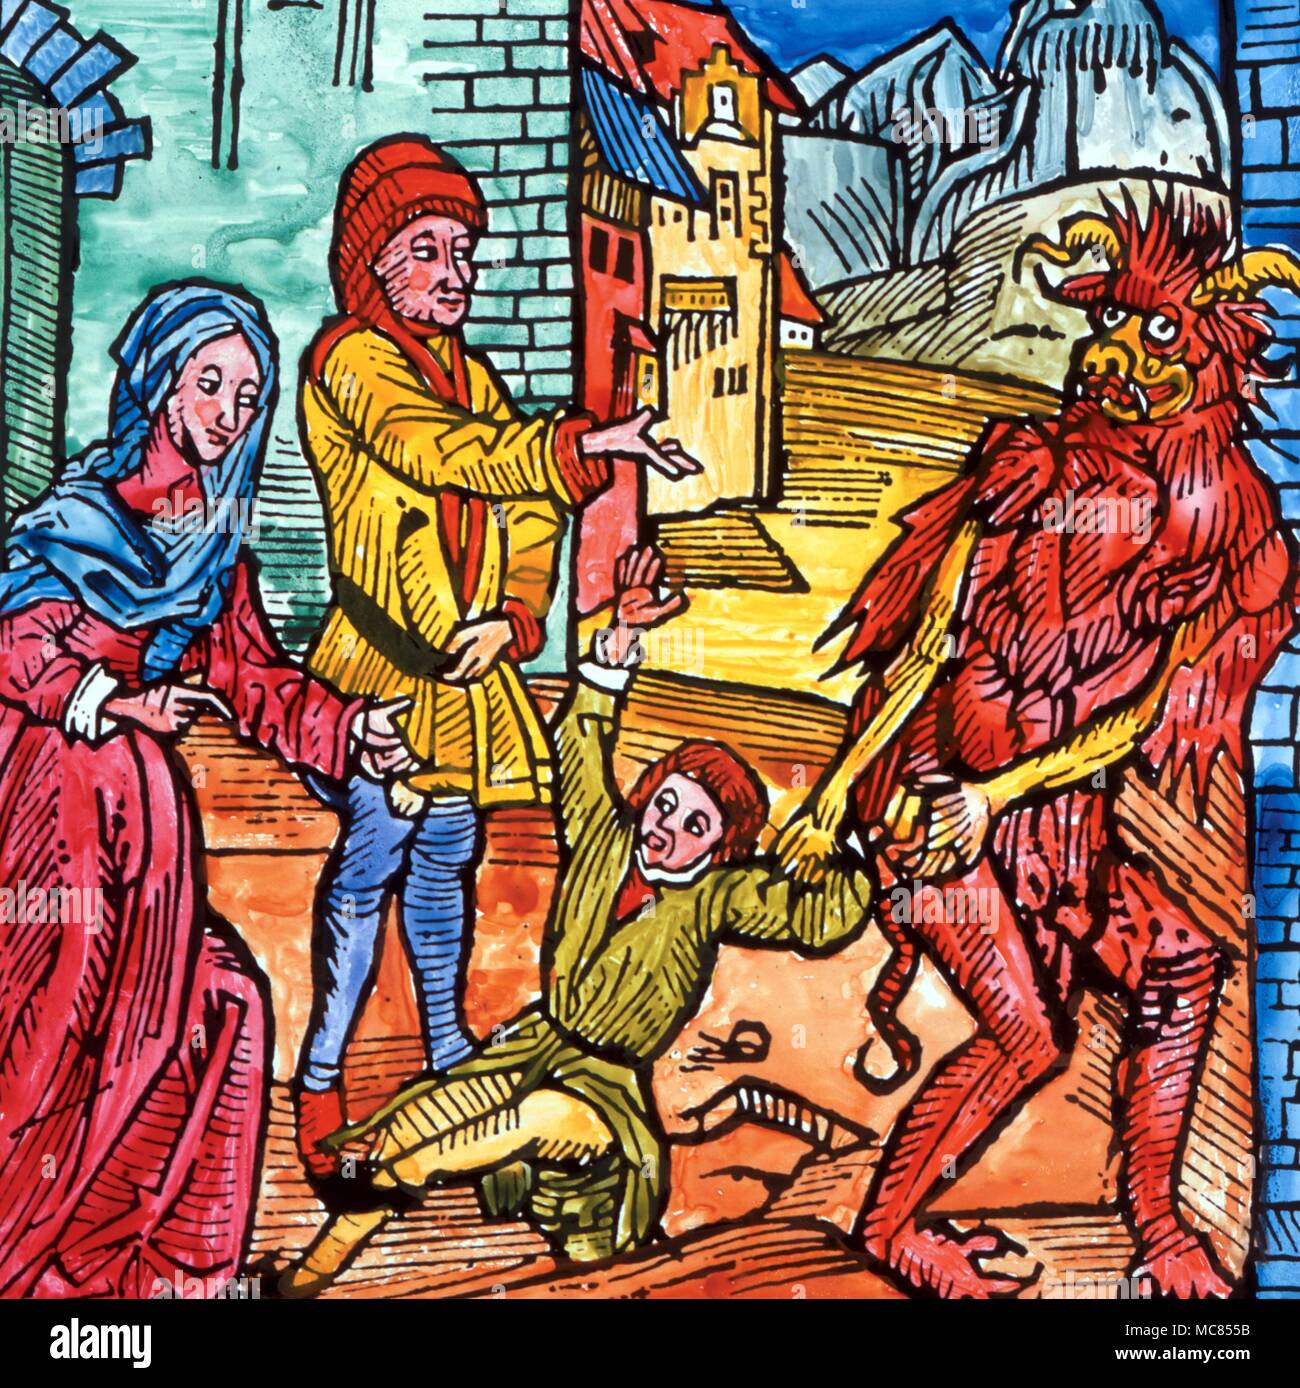 Dämonische Verkauf mittelalterliche Bild (original Holzschnitt von Dürer), die die Eltern ihren Sohn verkaufen an den Teufel. Ursprünglich wurde Anfang des 16. Jahrhunderts. Stockfoto